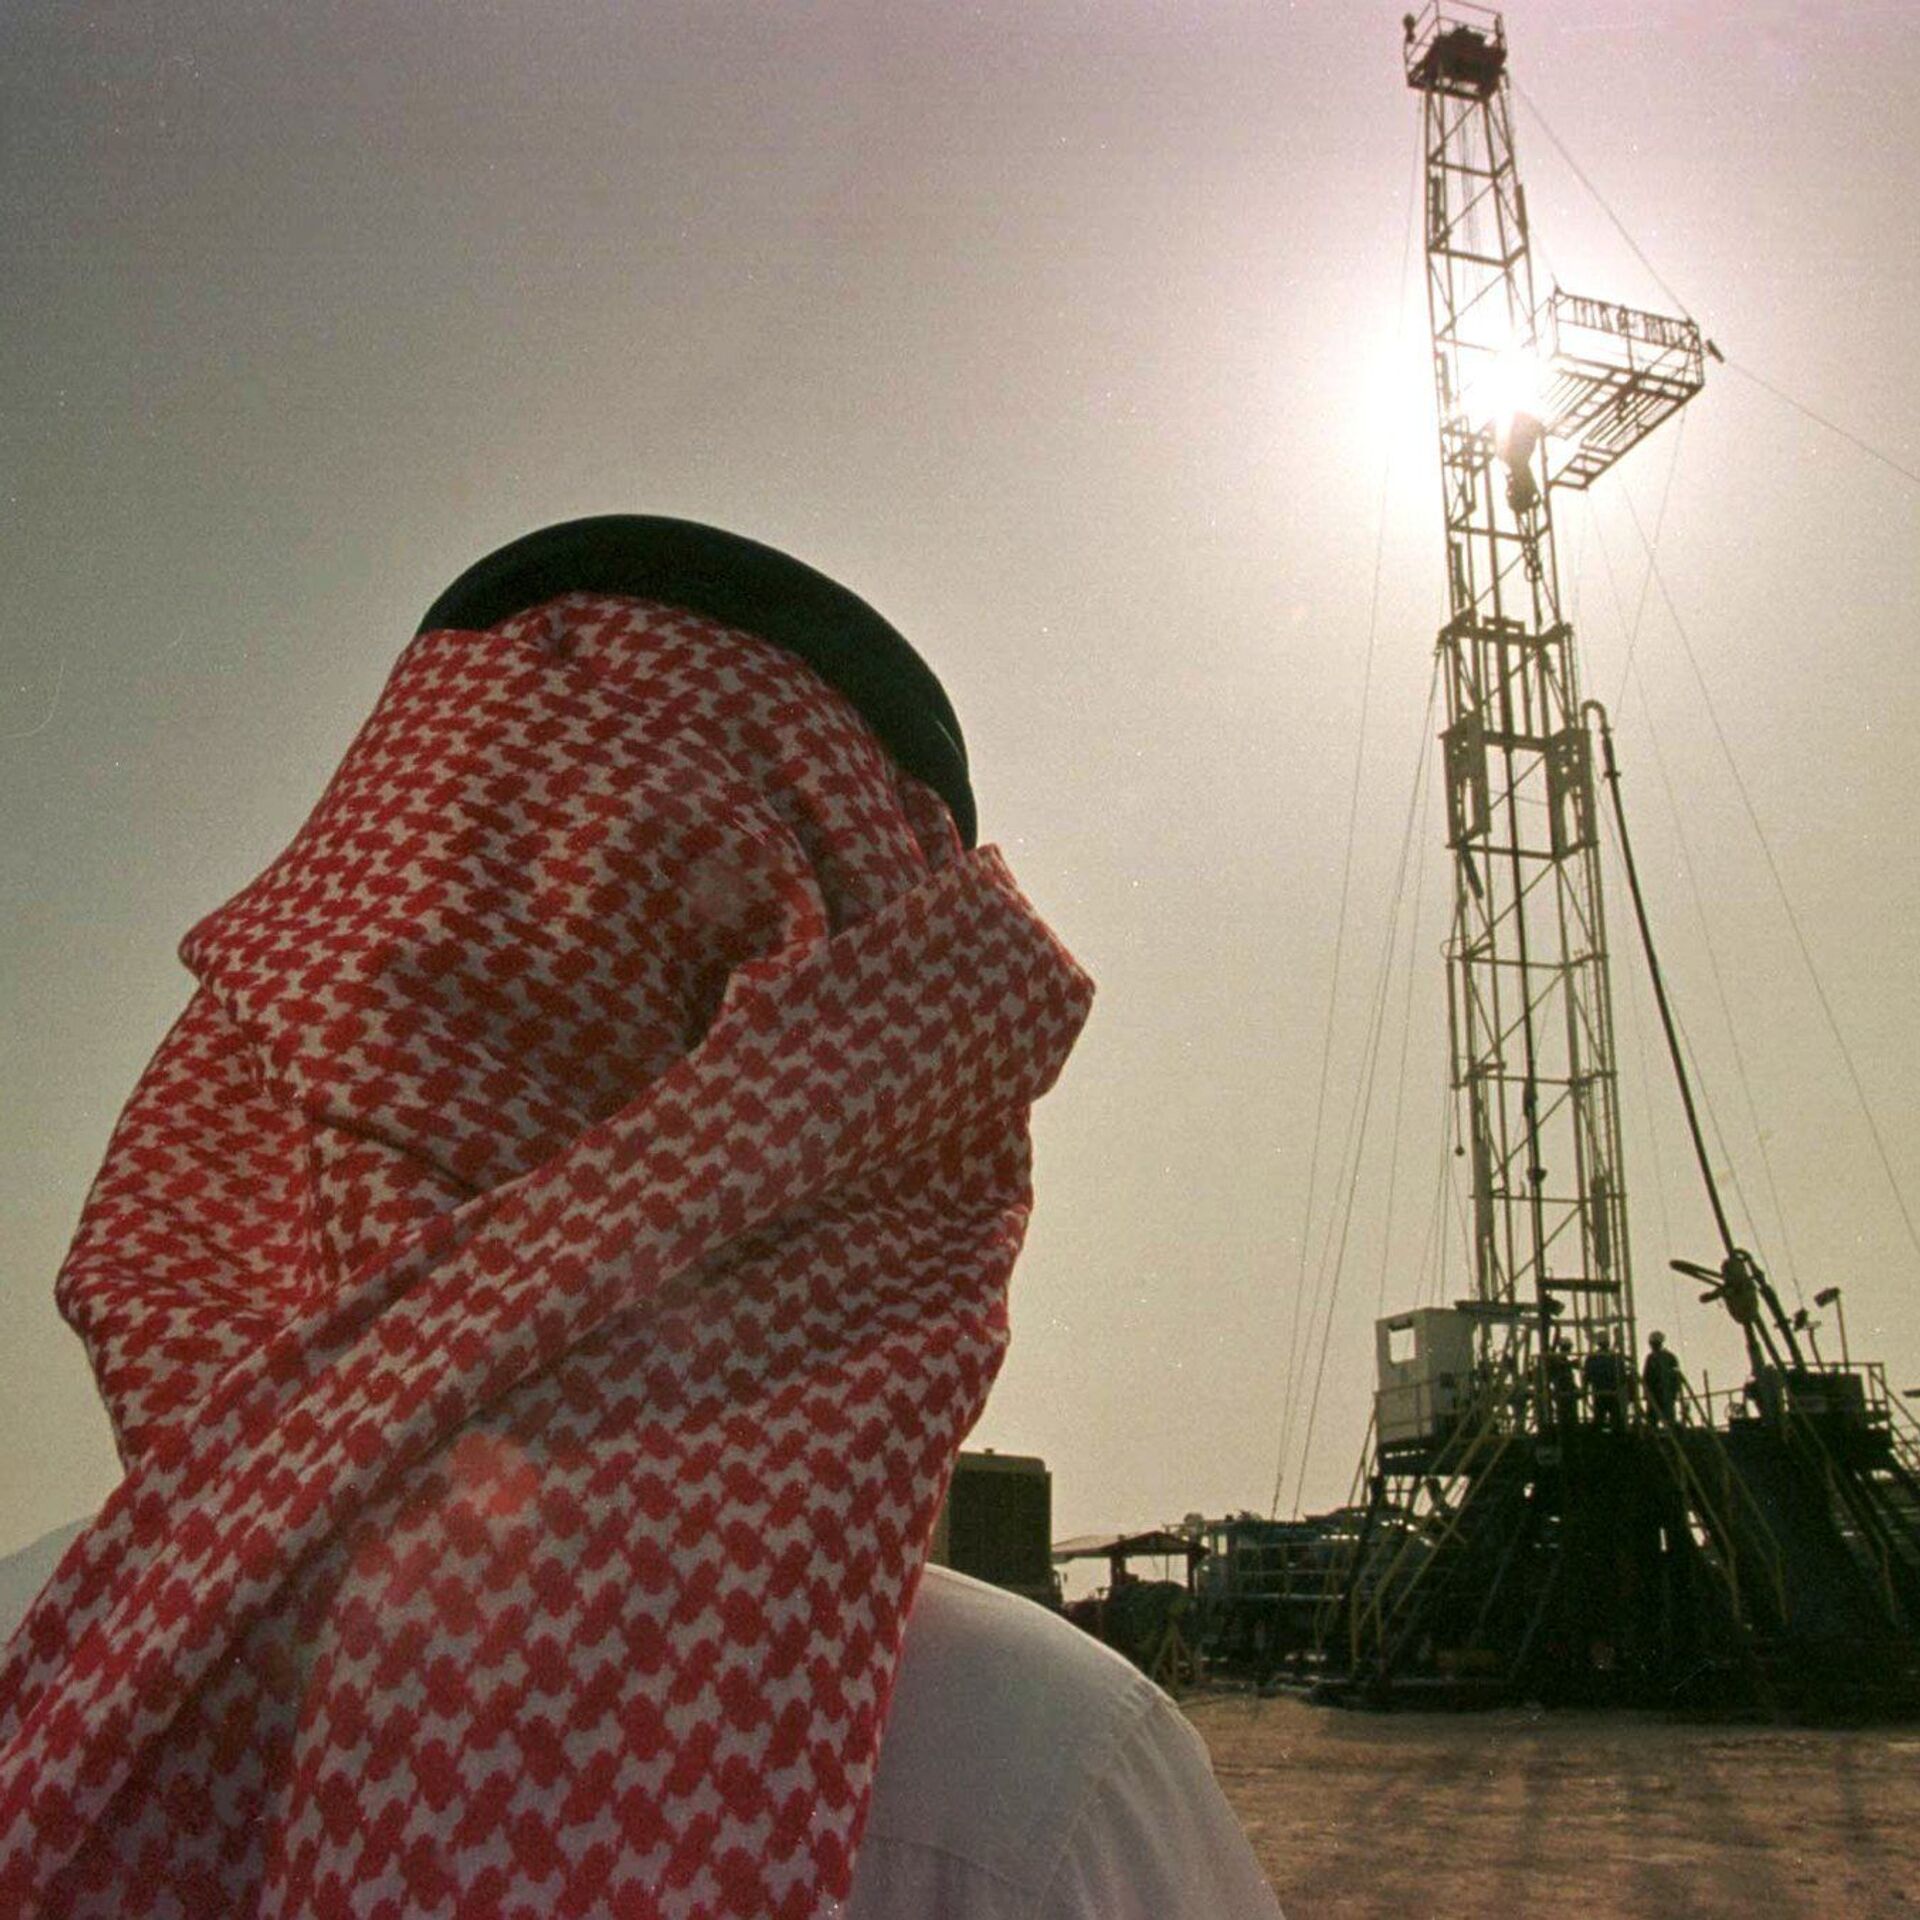 Саудовская аравия нефть газ. Саудовская Аравия нефтедобыча. Саудиты нефть РФ нефть. Нефтепромышленность Саудовская Аравия. Объединённые арабские эмираты добыча нефти.